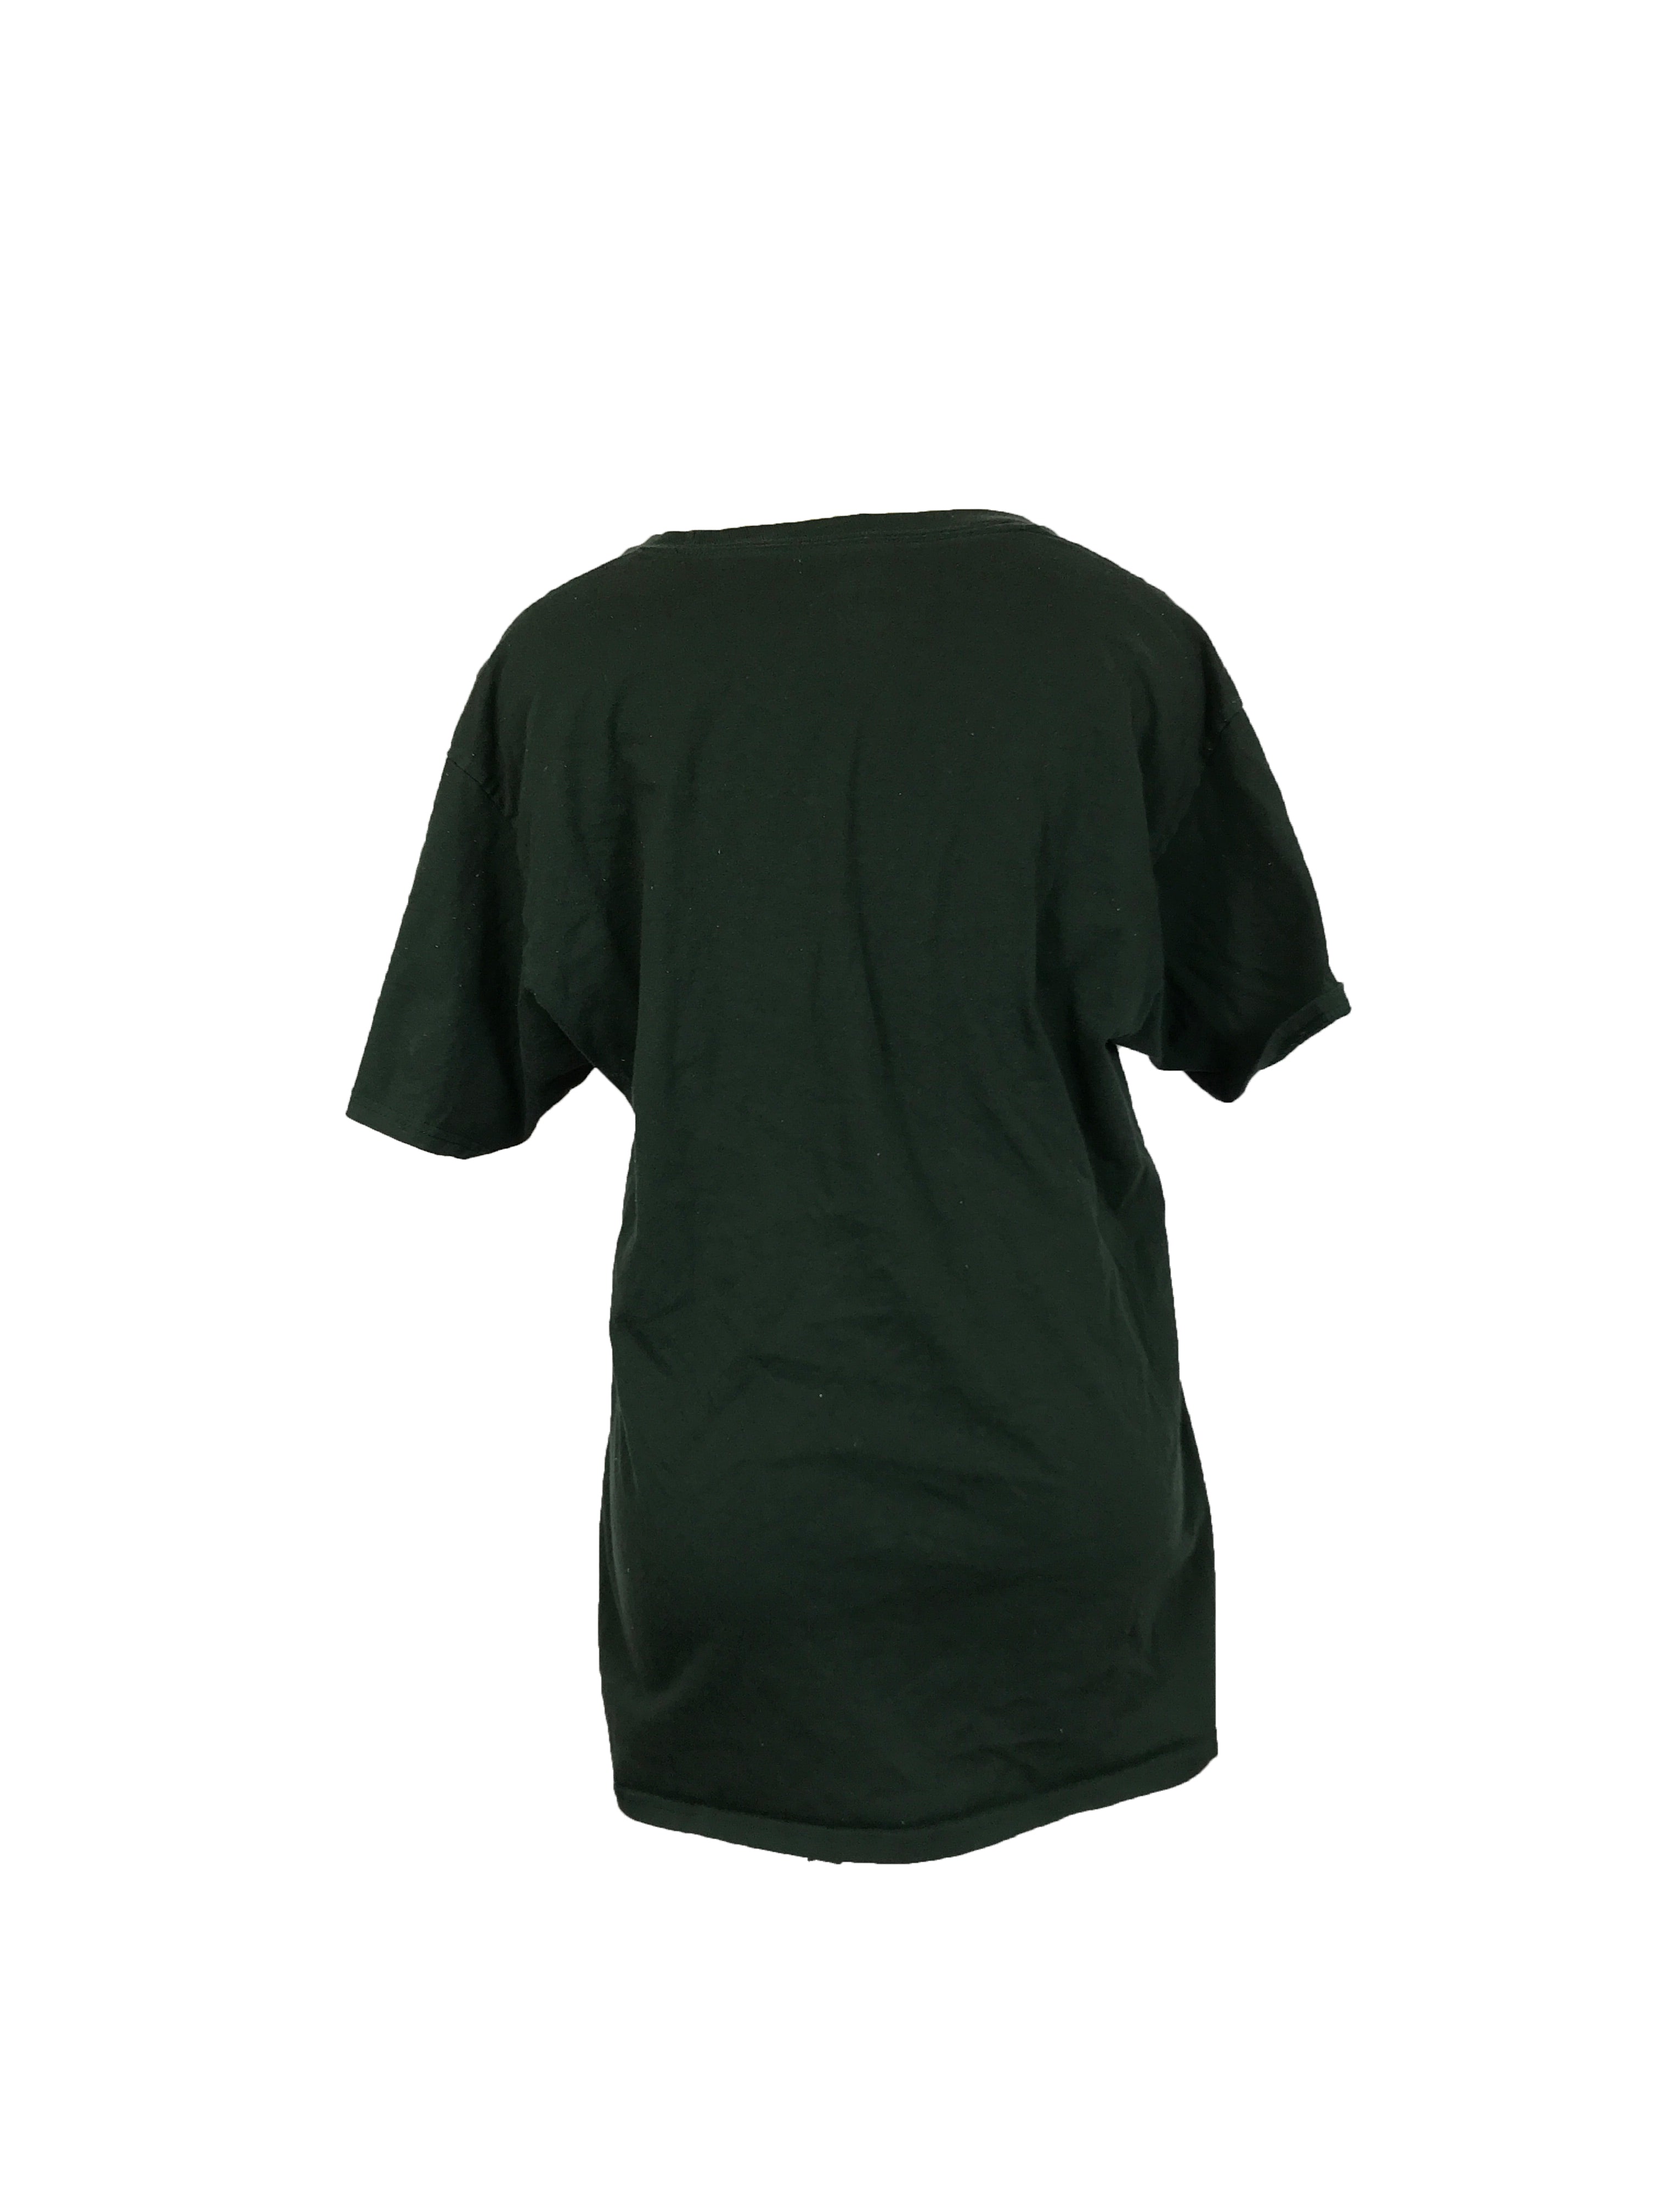 Champion Michigan State Green Shirt Unisex Size Large